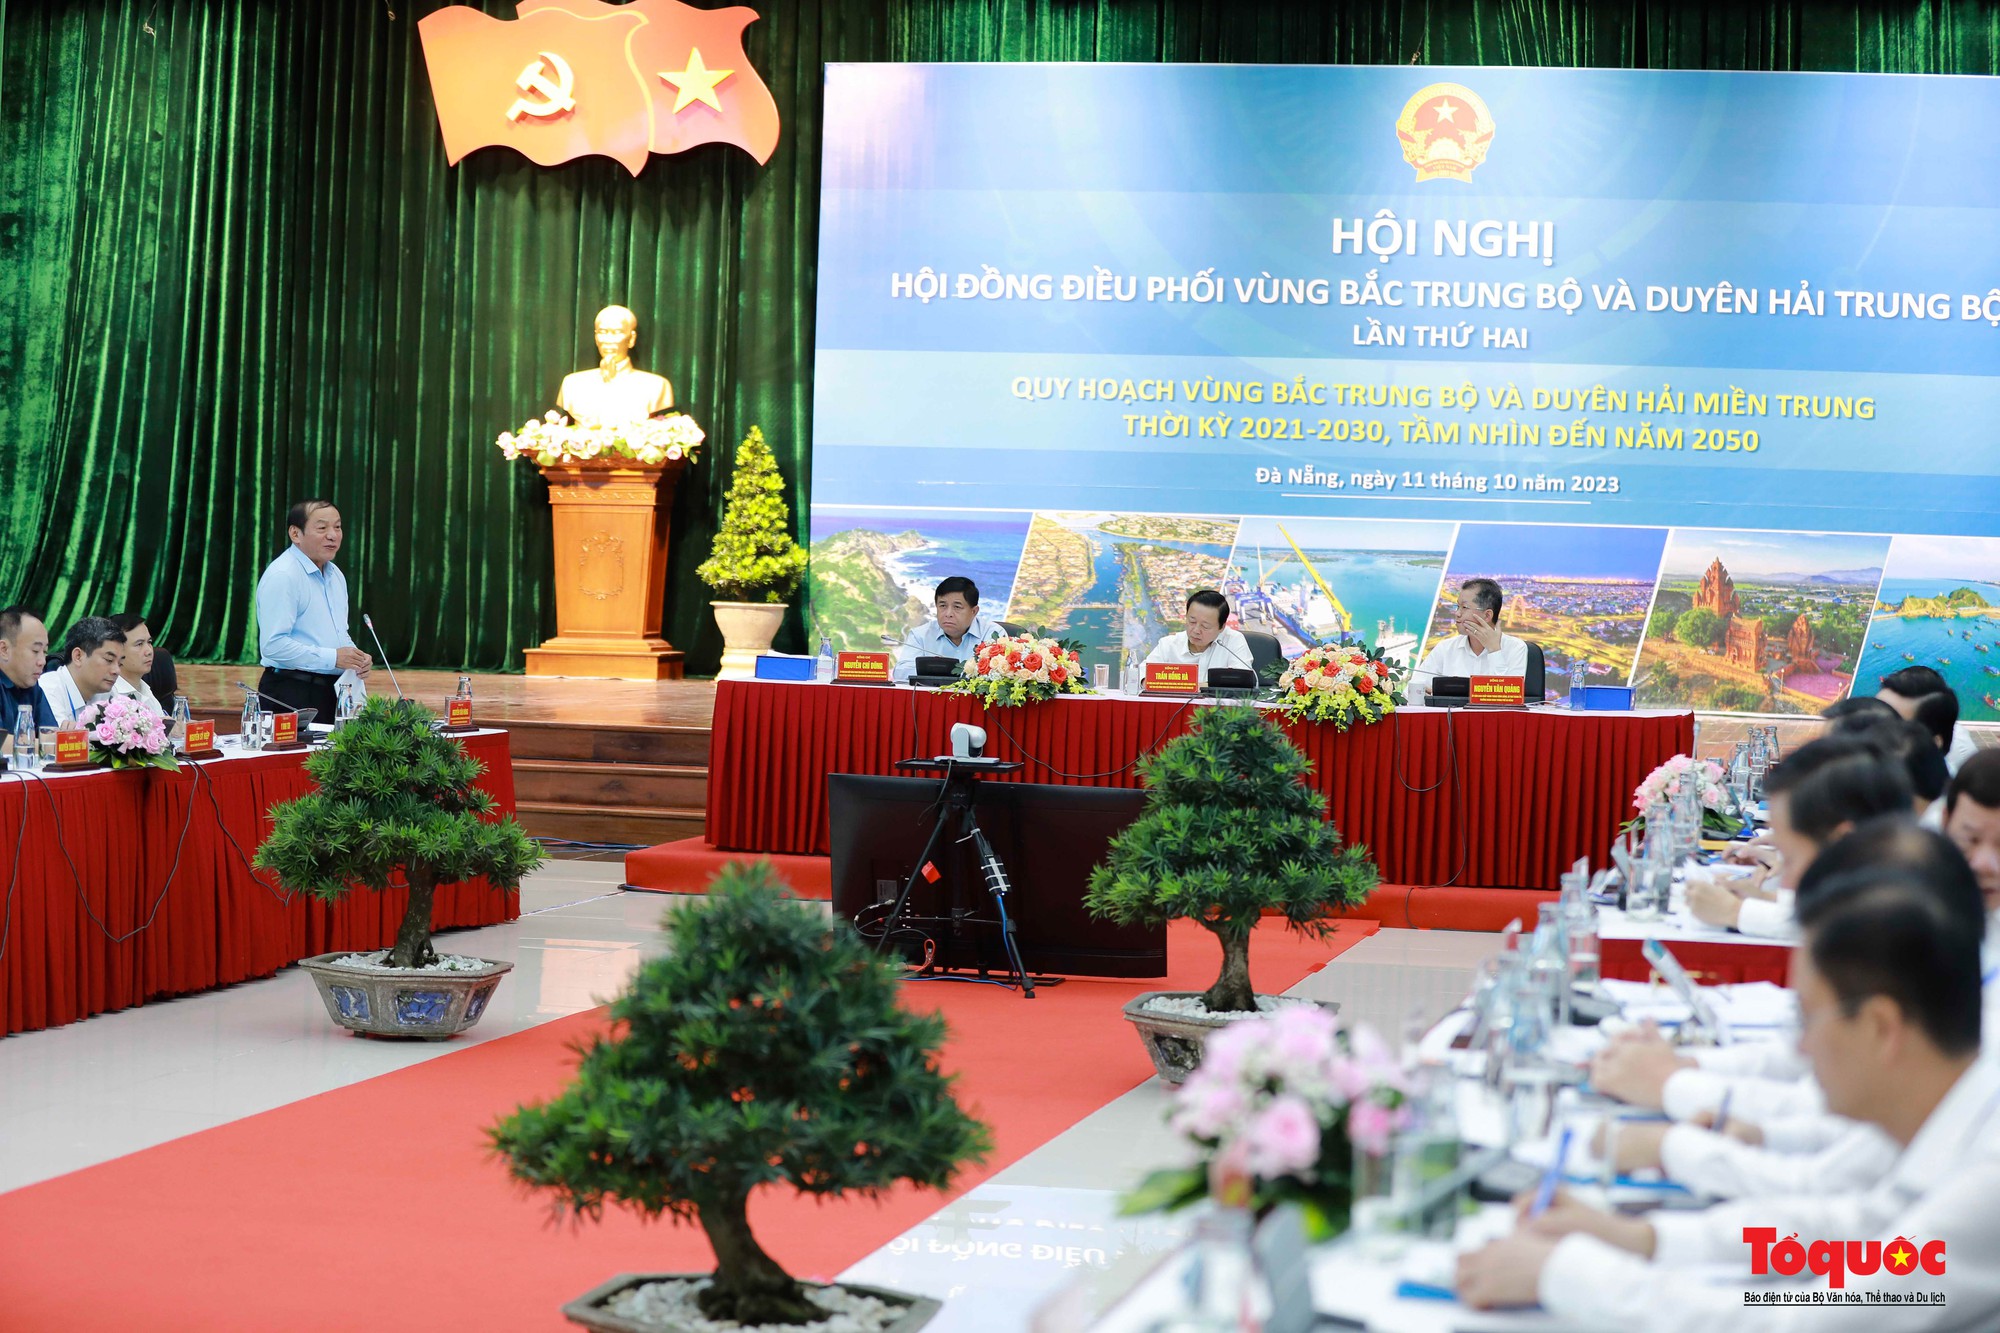 Bộ trưởng Bộ VHTTDL Nguyễn Văn Hùng: Quy hoạch vùng phải chú trọng phát triển du lịch văn hóa - Ảnh 4.